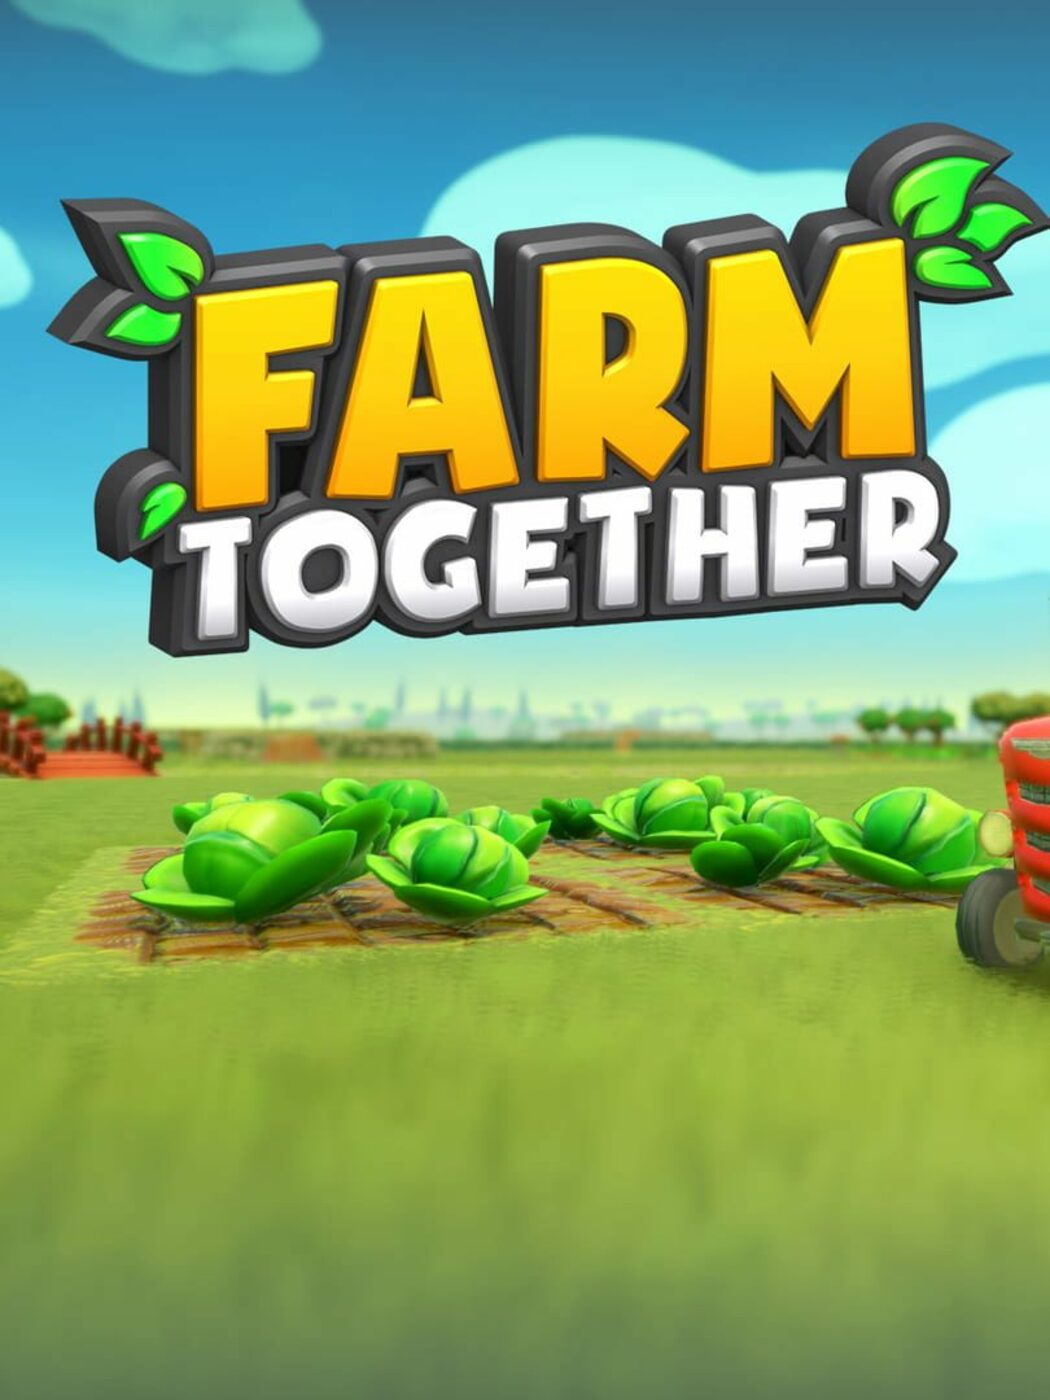 Farm Together, O novo joguinho de fazenda da Steam